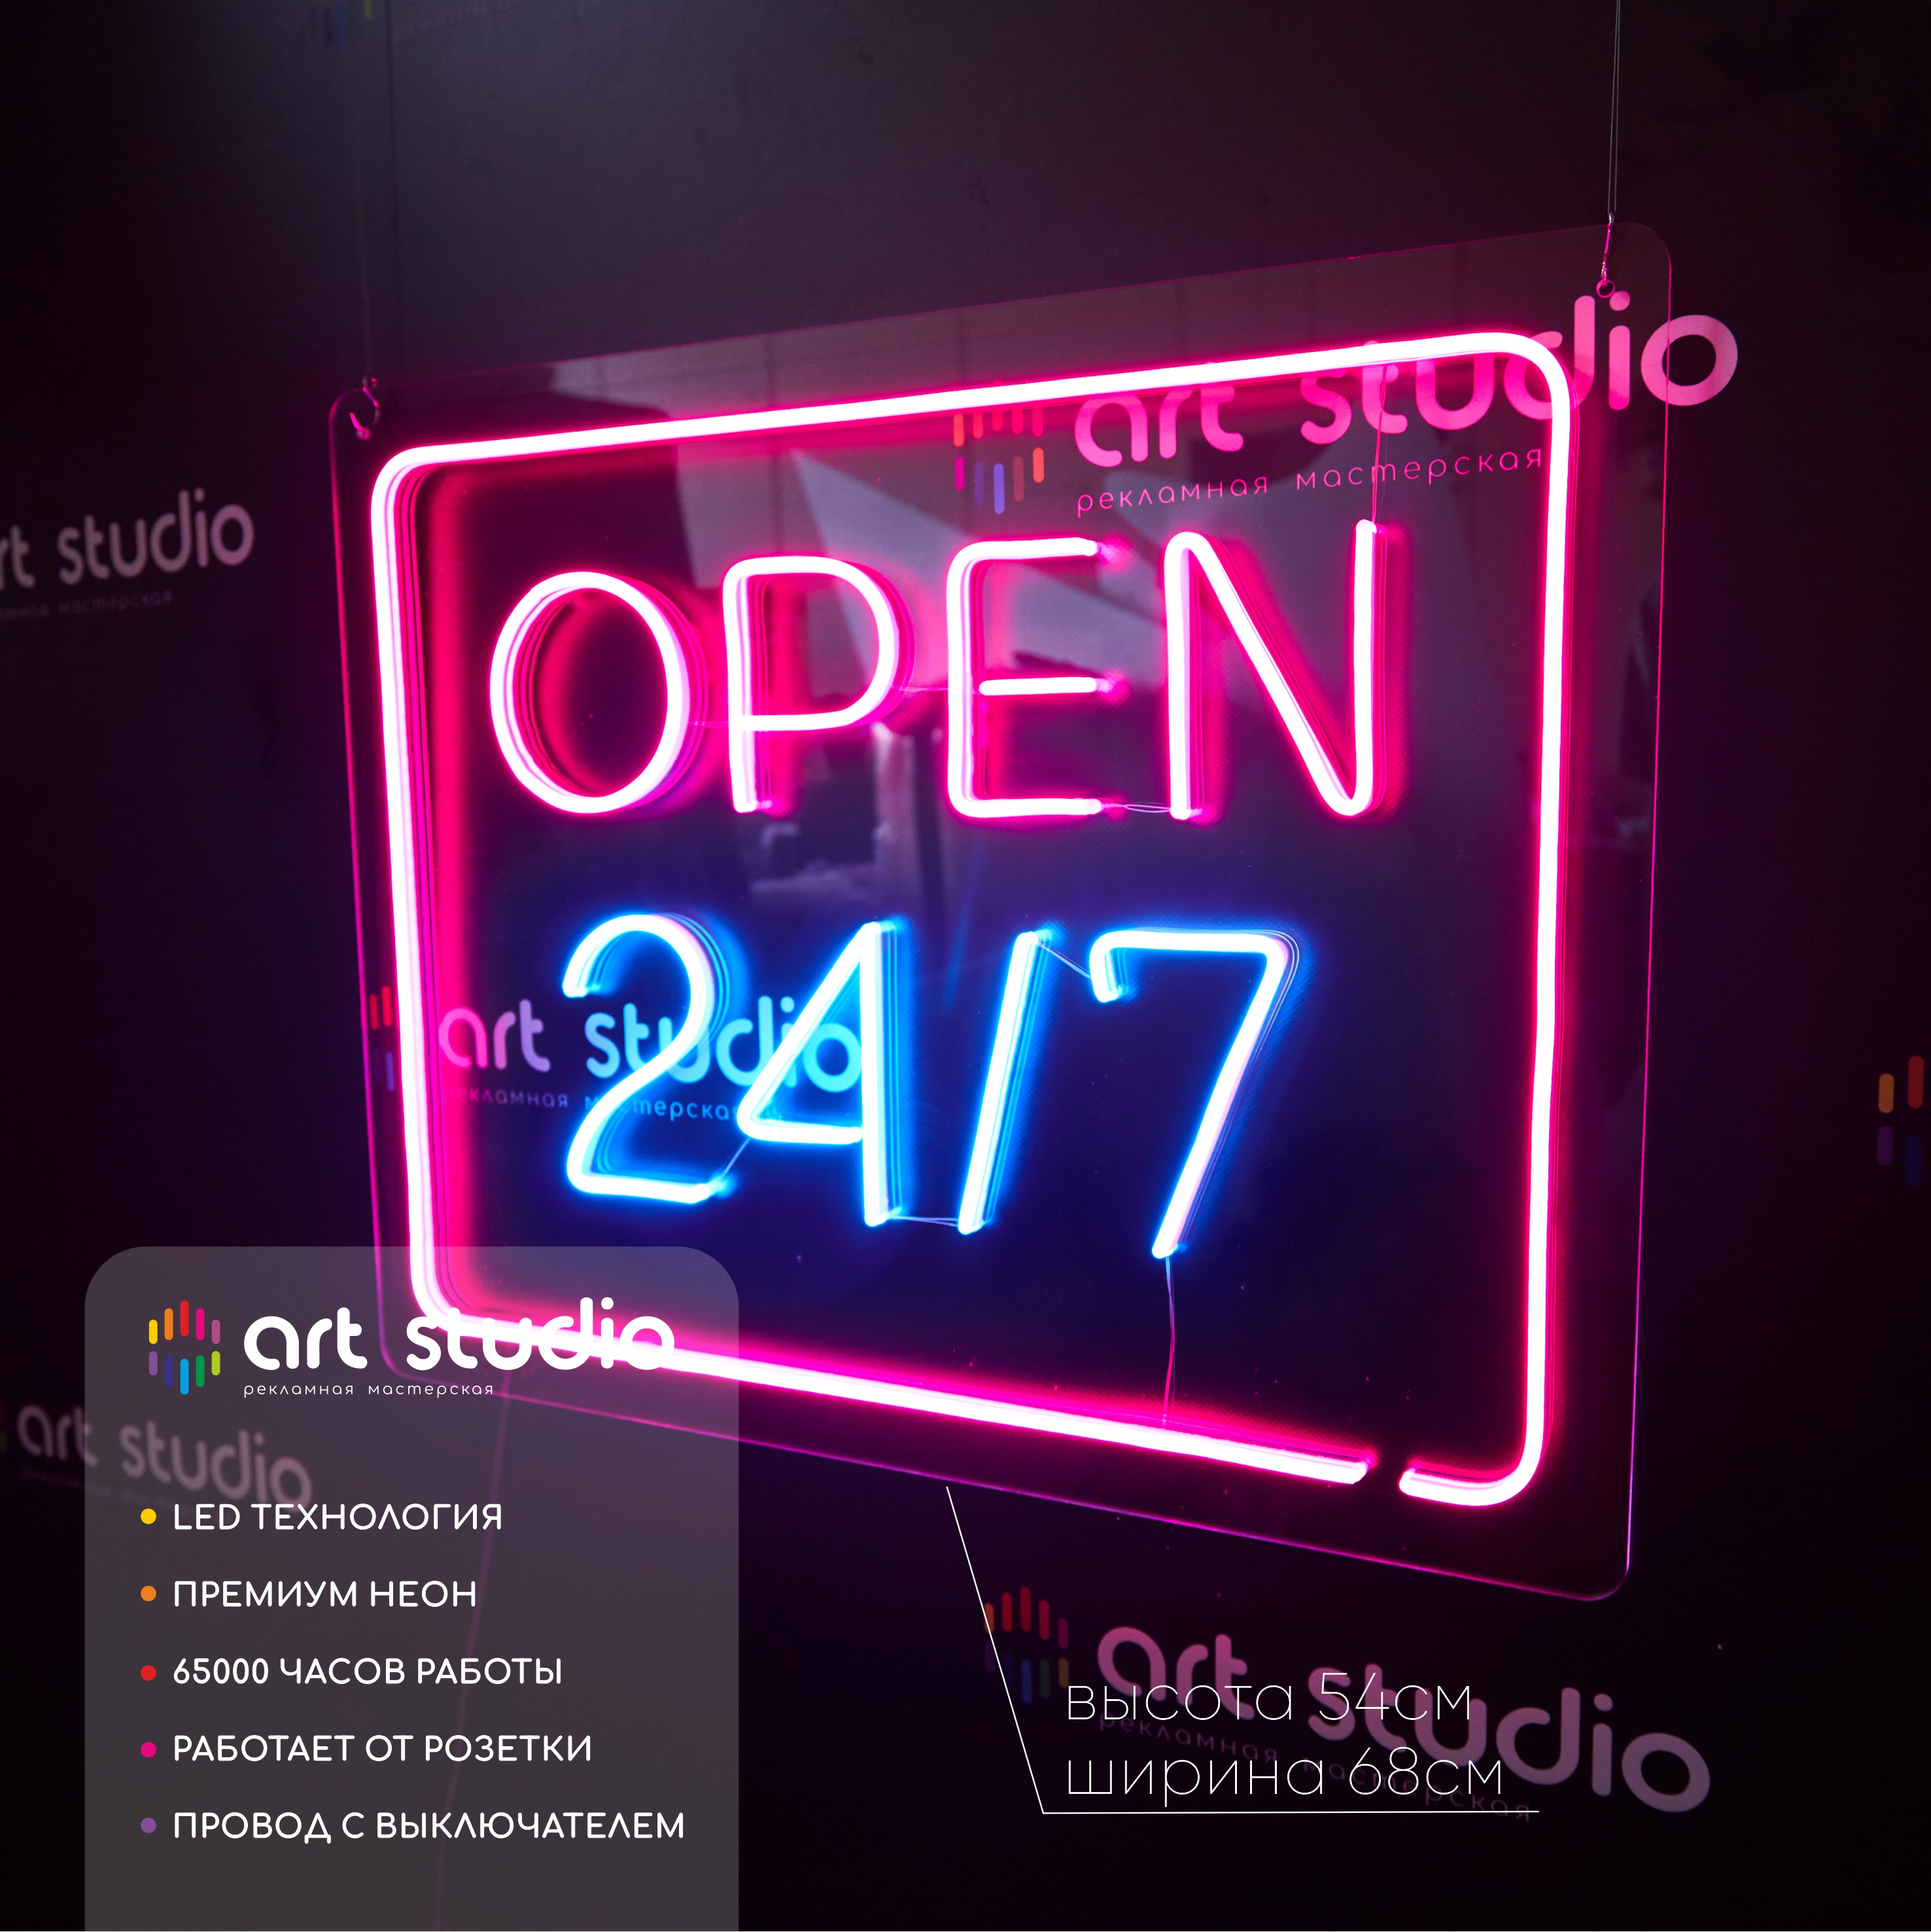 Неоновая вывеска Art Studio Open 24/7